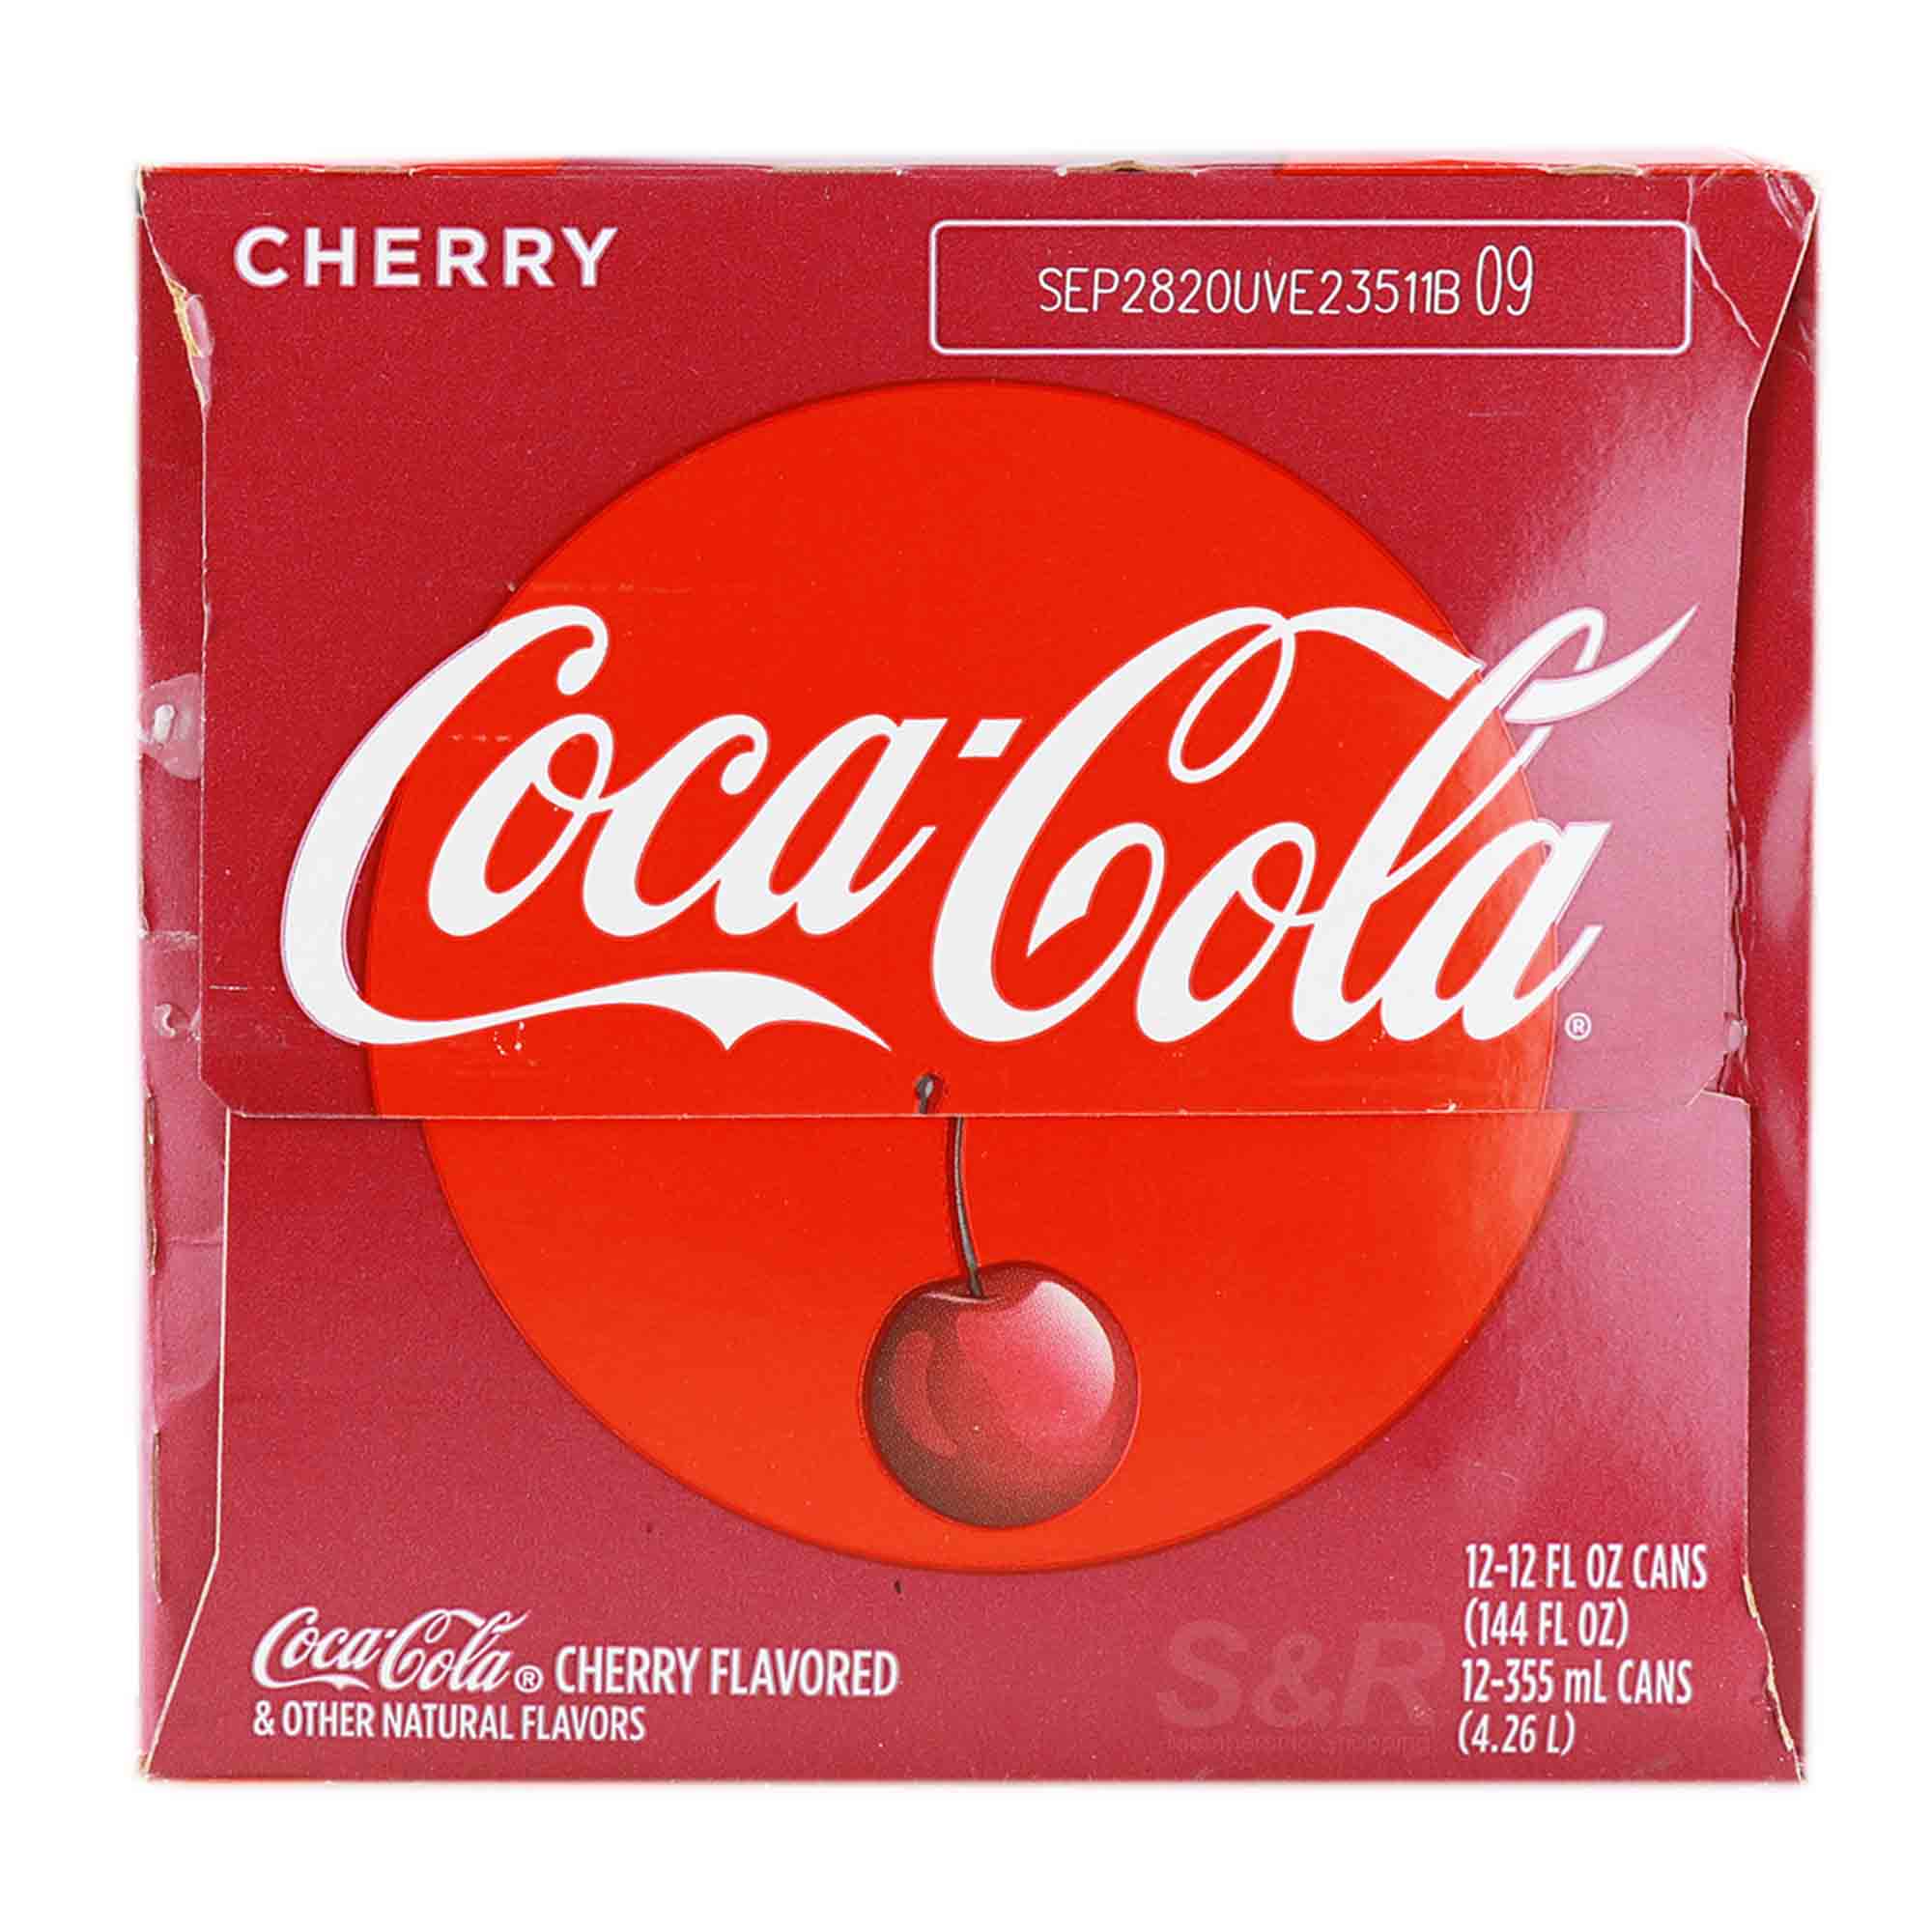 Cherry Soda